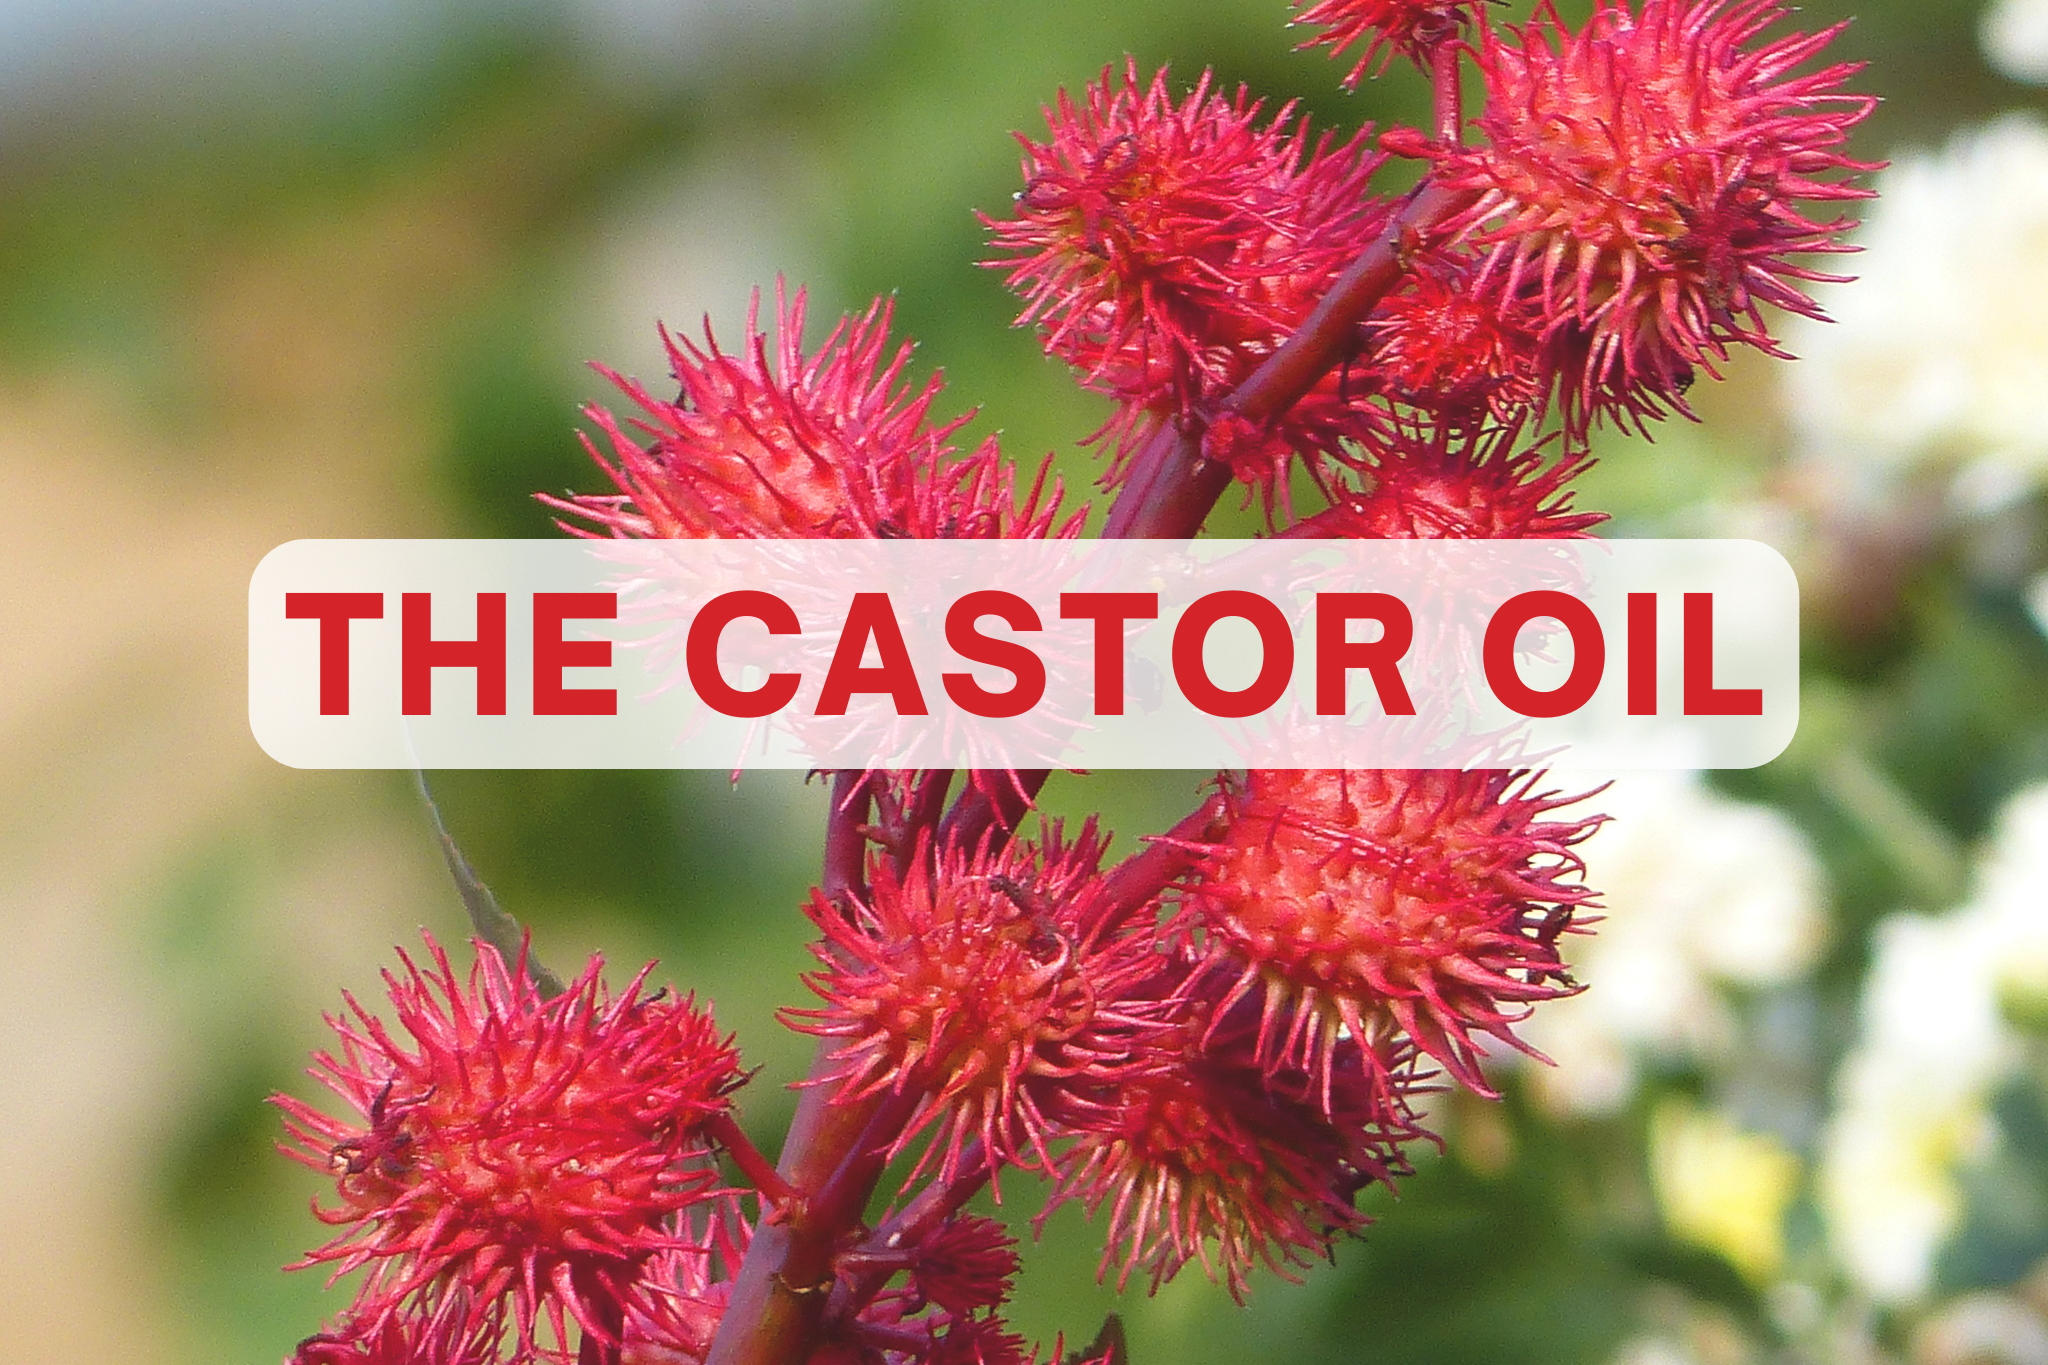 The castor oil